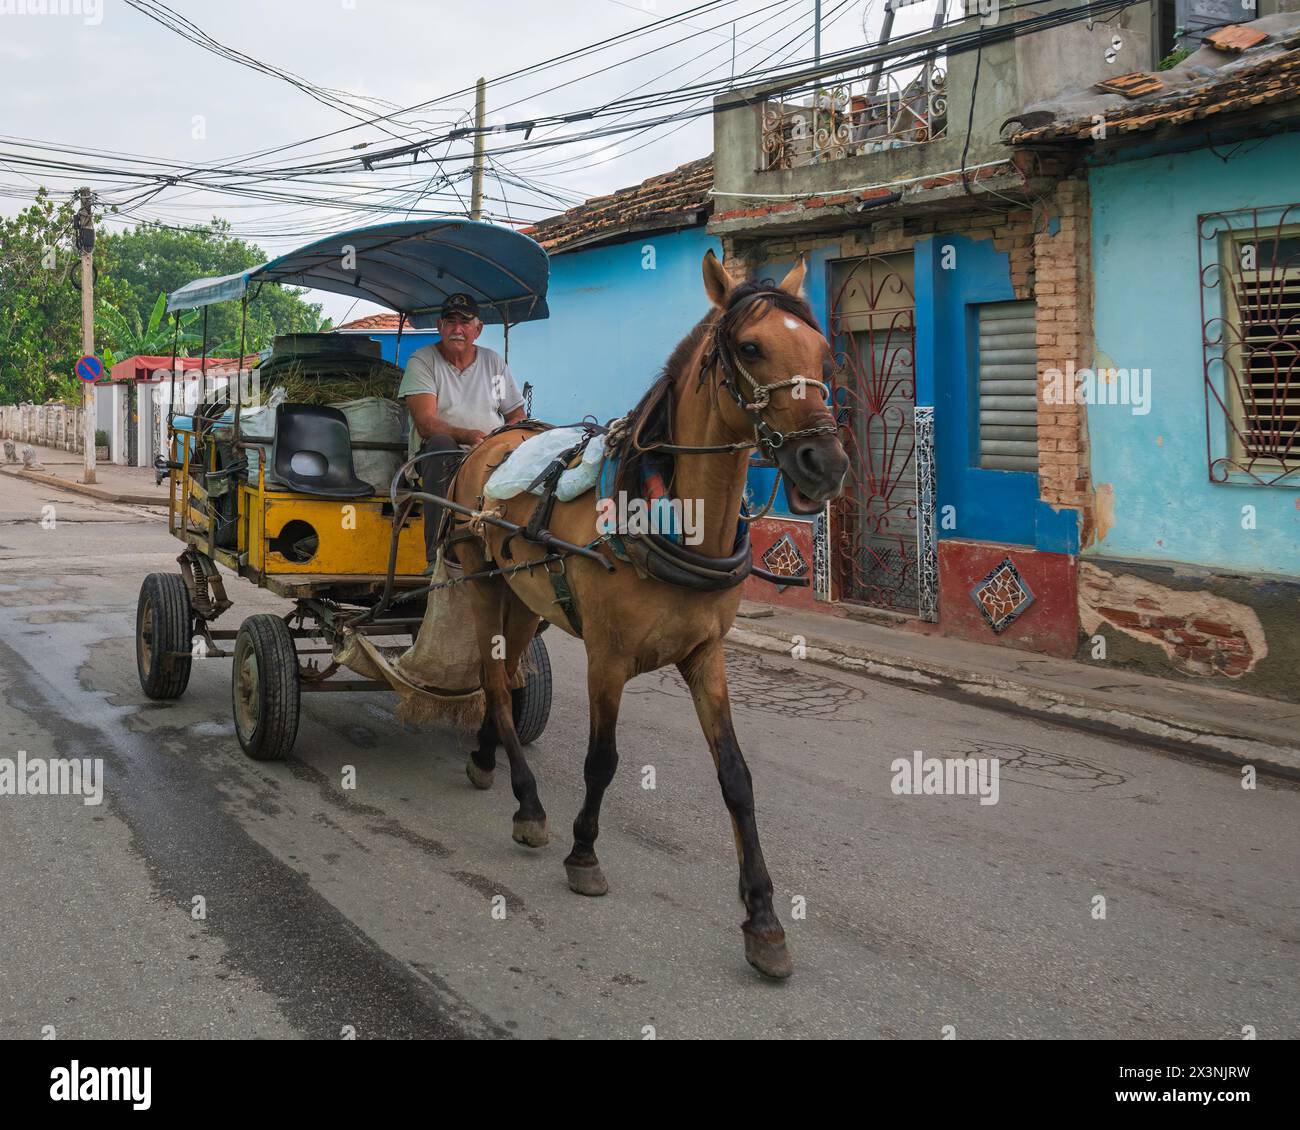 La vue très commune des chevaux et des charrettes utilisés pour transporter des personnes et des marchandises dans les rues de la vieille ville, Trinidad, Cuba Banque D'Images